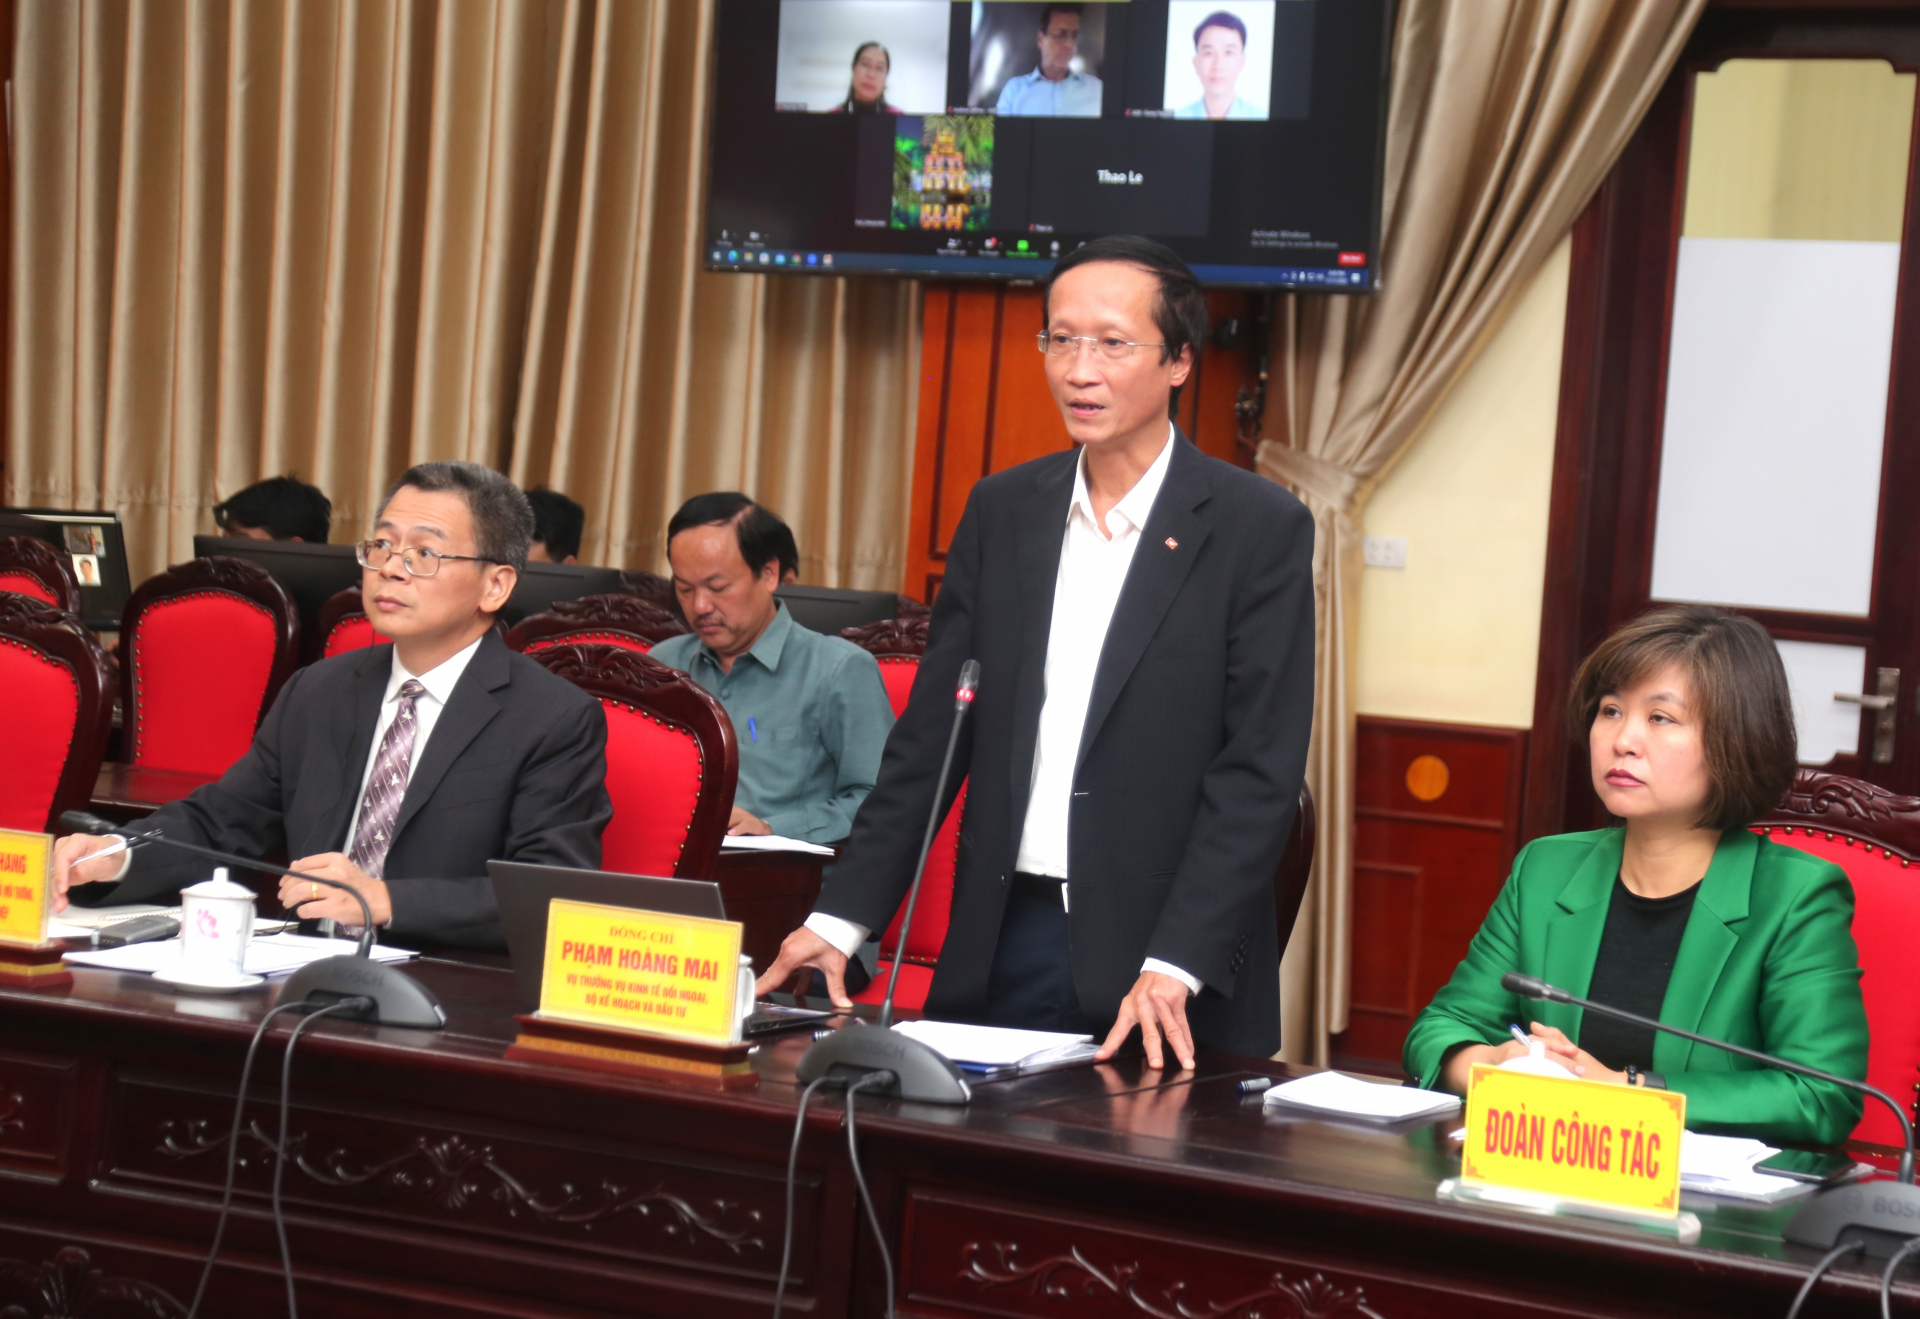 Vụ trưởng Vụ Kinh tế đối ngoại Phạm Hoàng Mai phát biểu tại buổi làm việc.